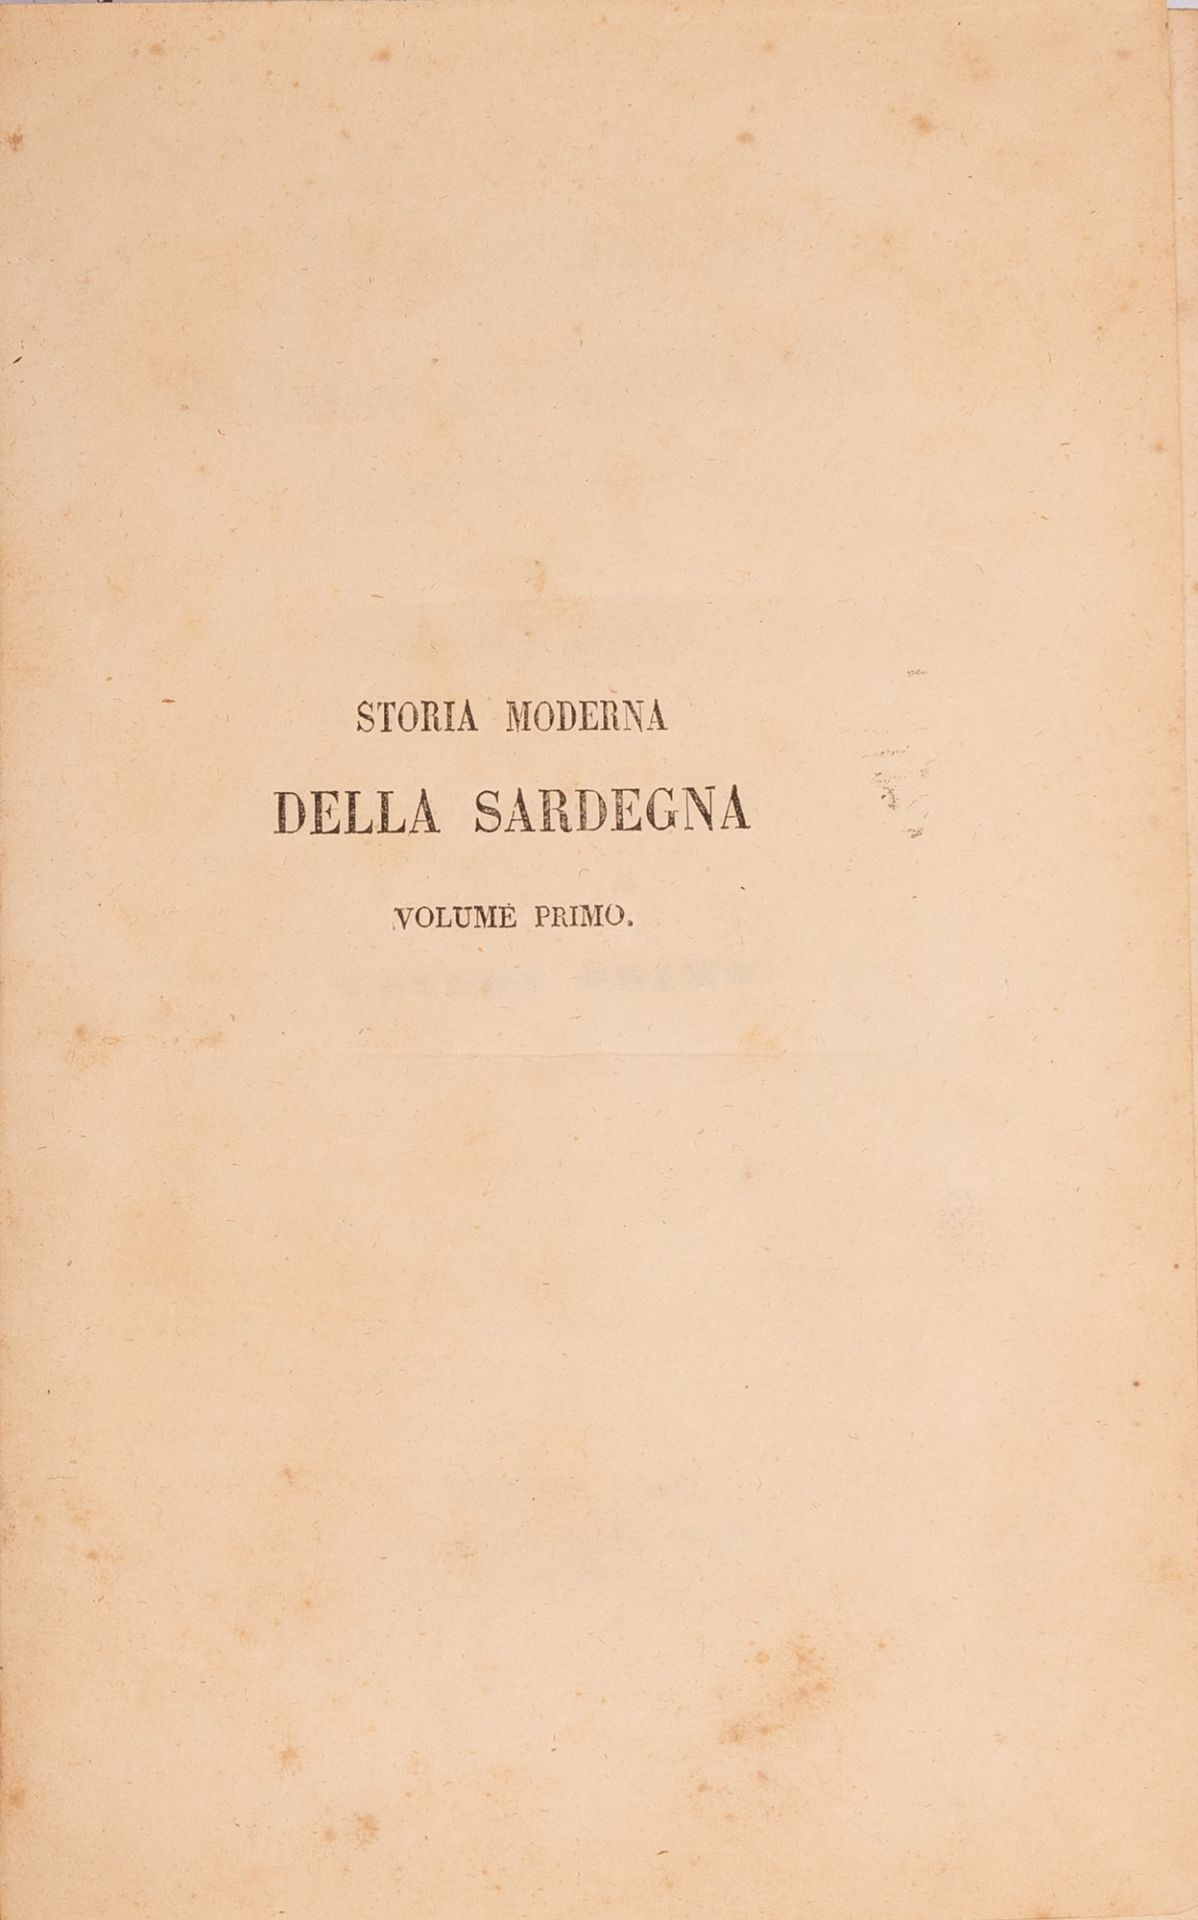 Storia Moderna della Sardegna dall'anno 1773 al 1799 - Image 3 of 4